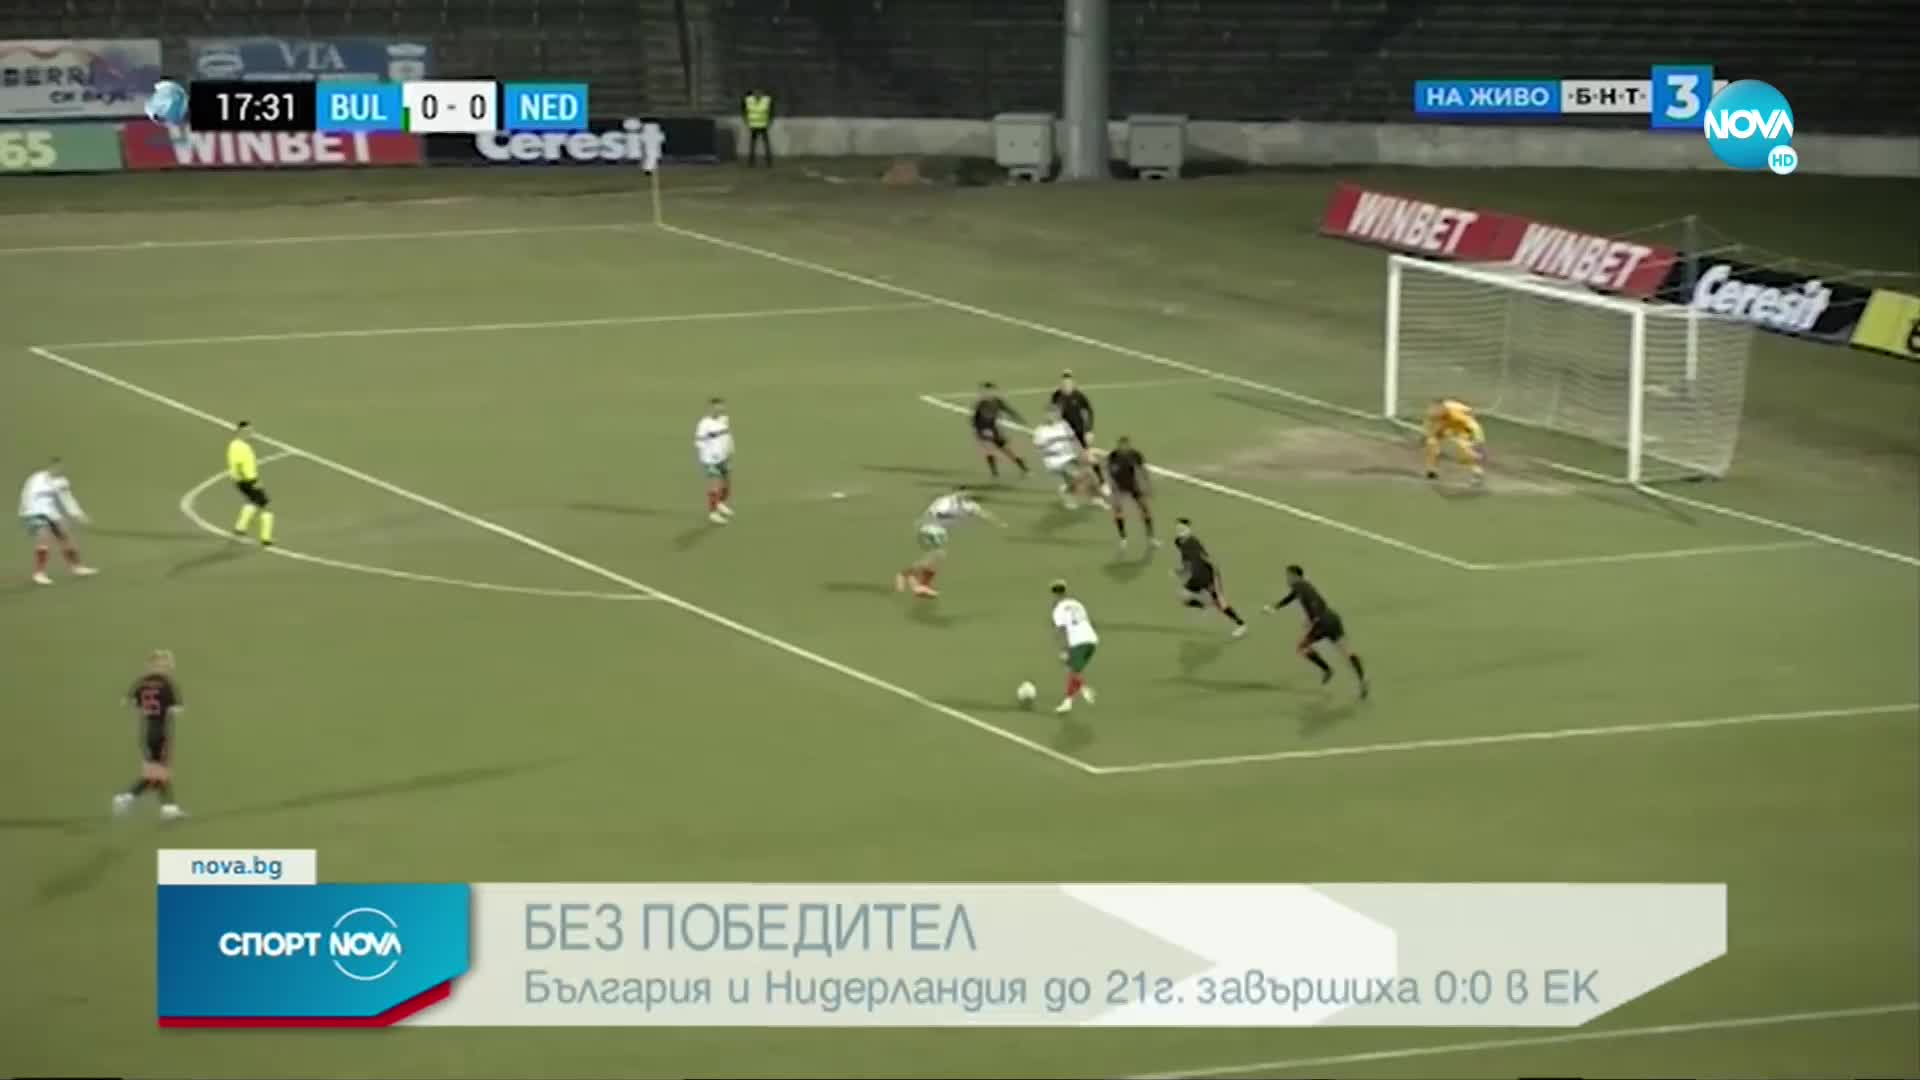 България U21 - Нидерландия U21 0:0 /репортаж/